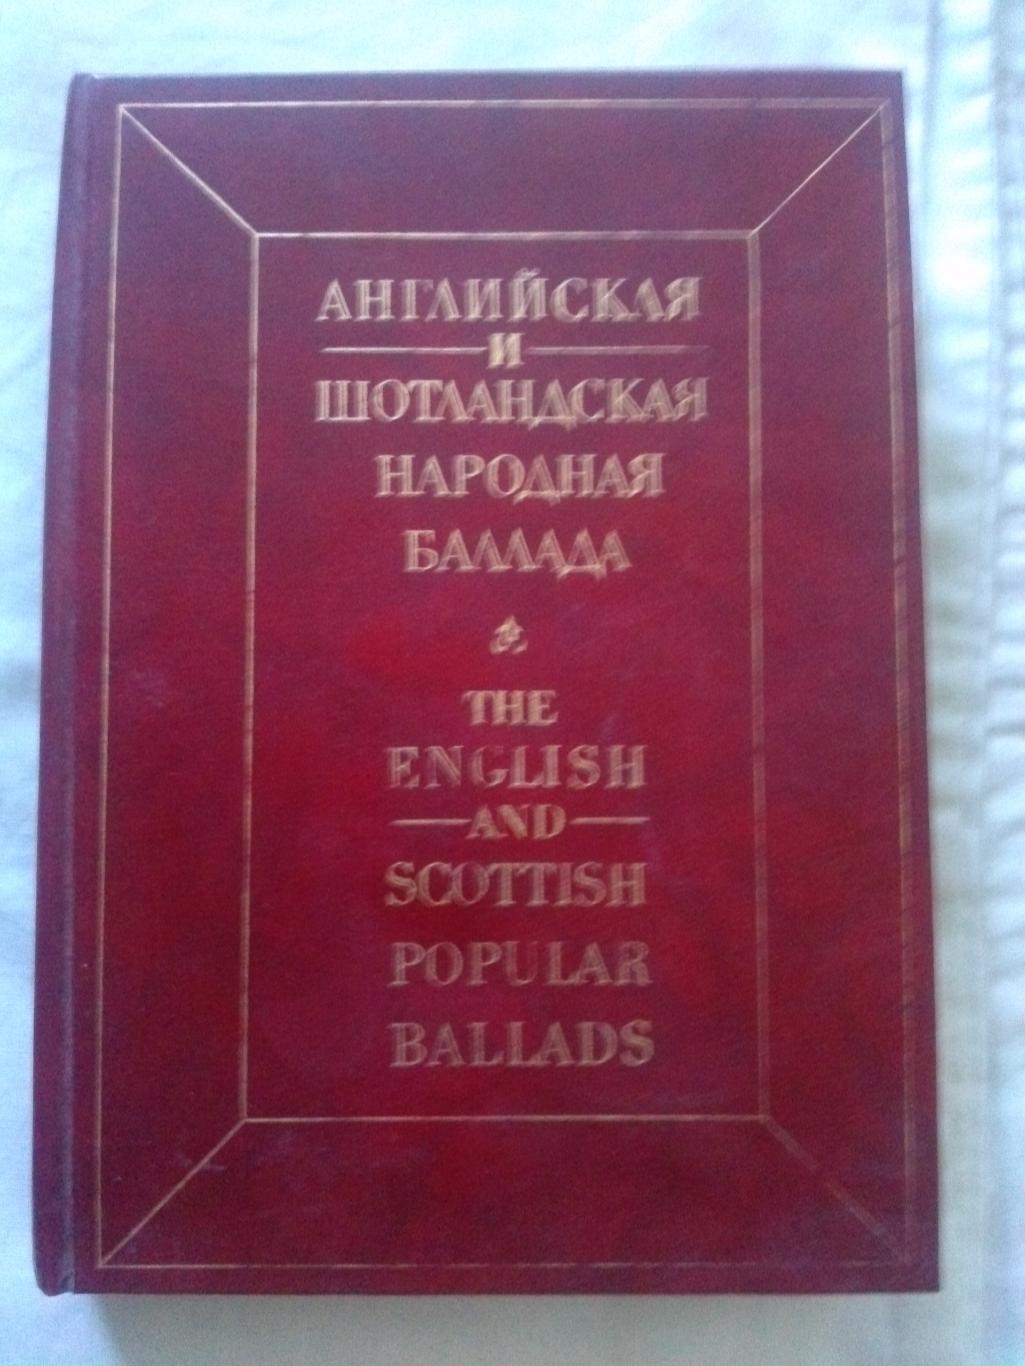 Английская и шотландская народная баллада ( 1988 г. ) Поэзия (Англия и Шотландия